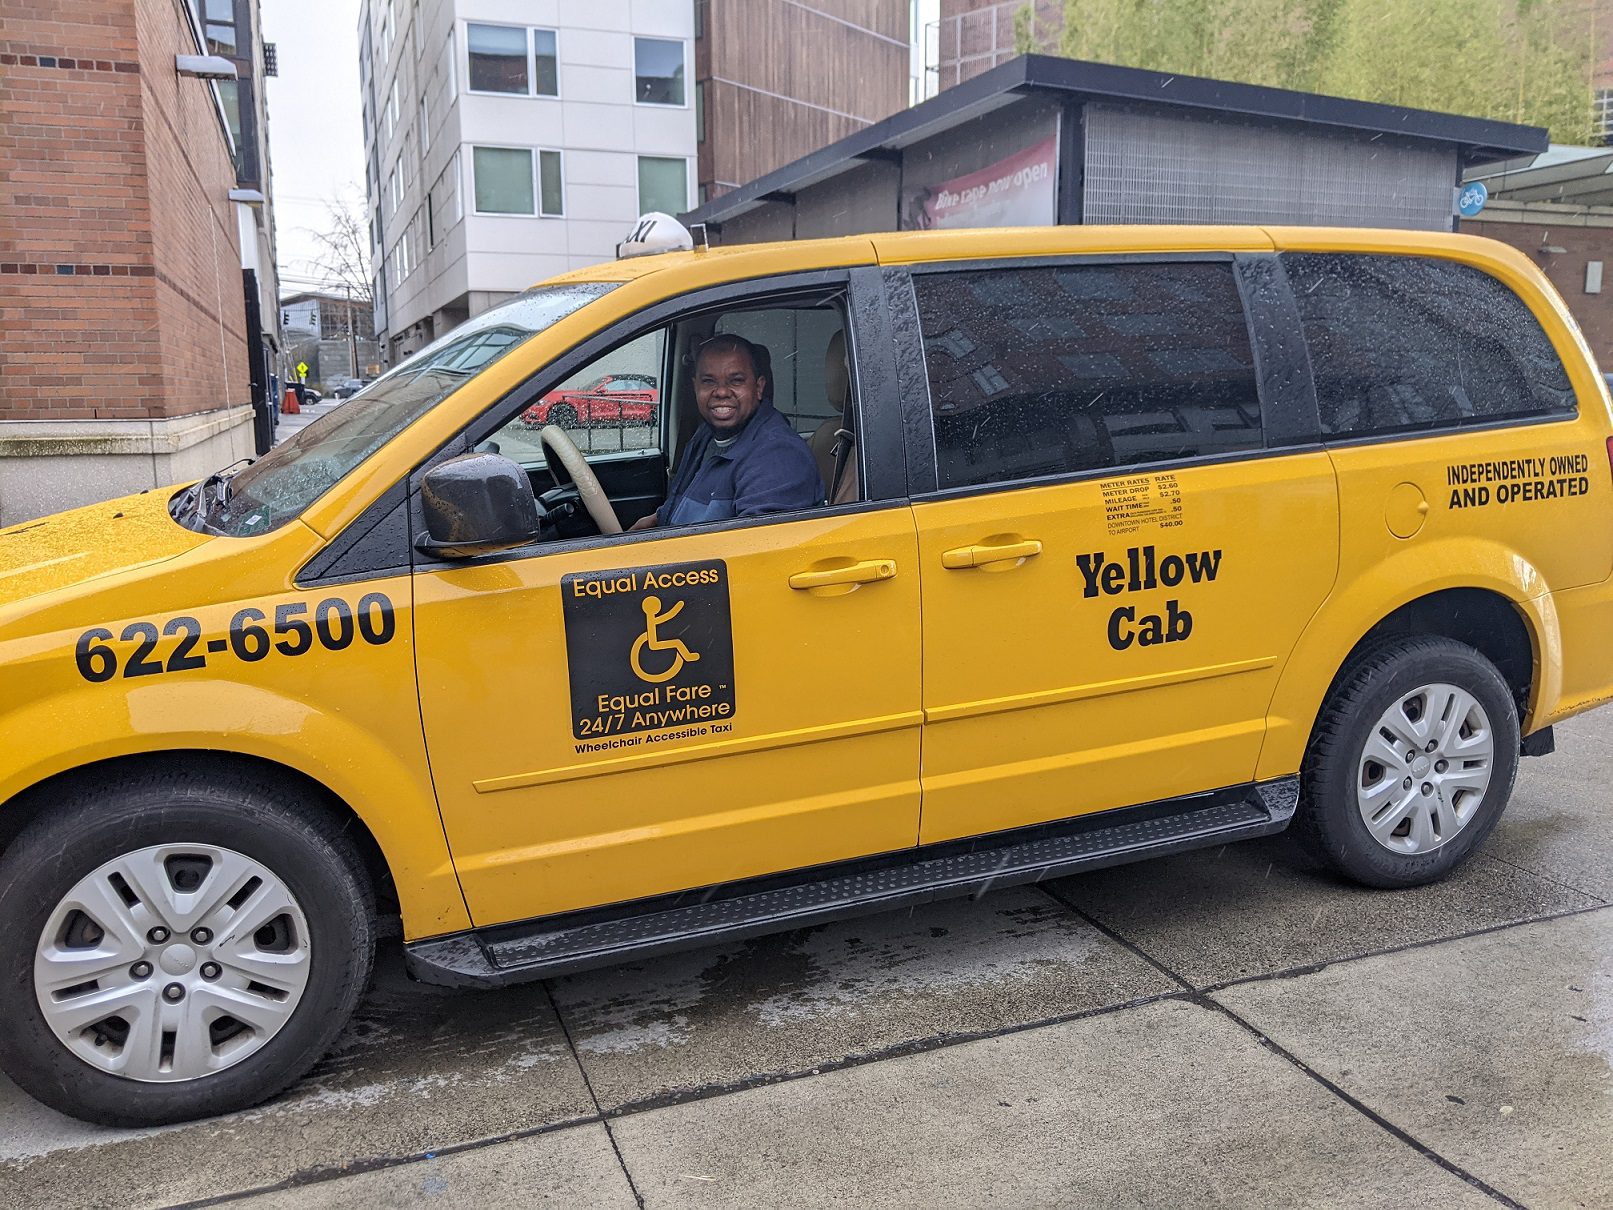 Tài xế xe taxi Yellow Cab chuẩn bị đón một người tham gia chương trình thử nghiệm Ride Now. Hình ảnh: SDOT